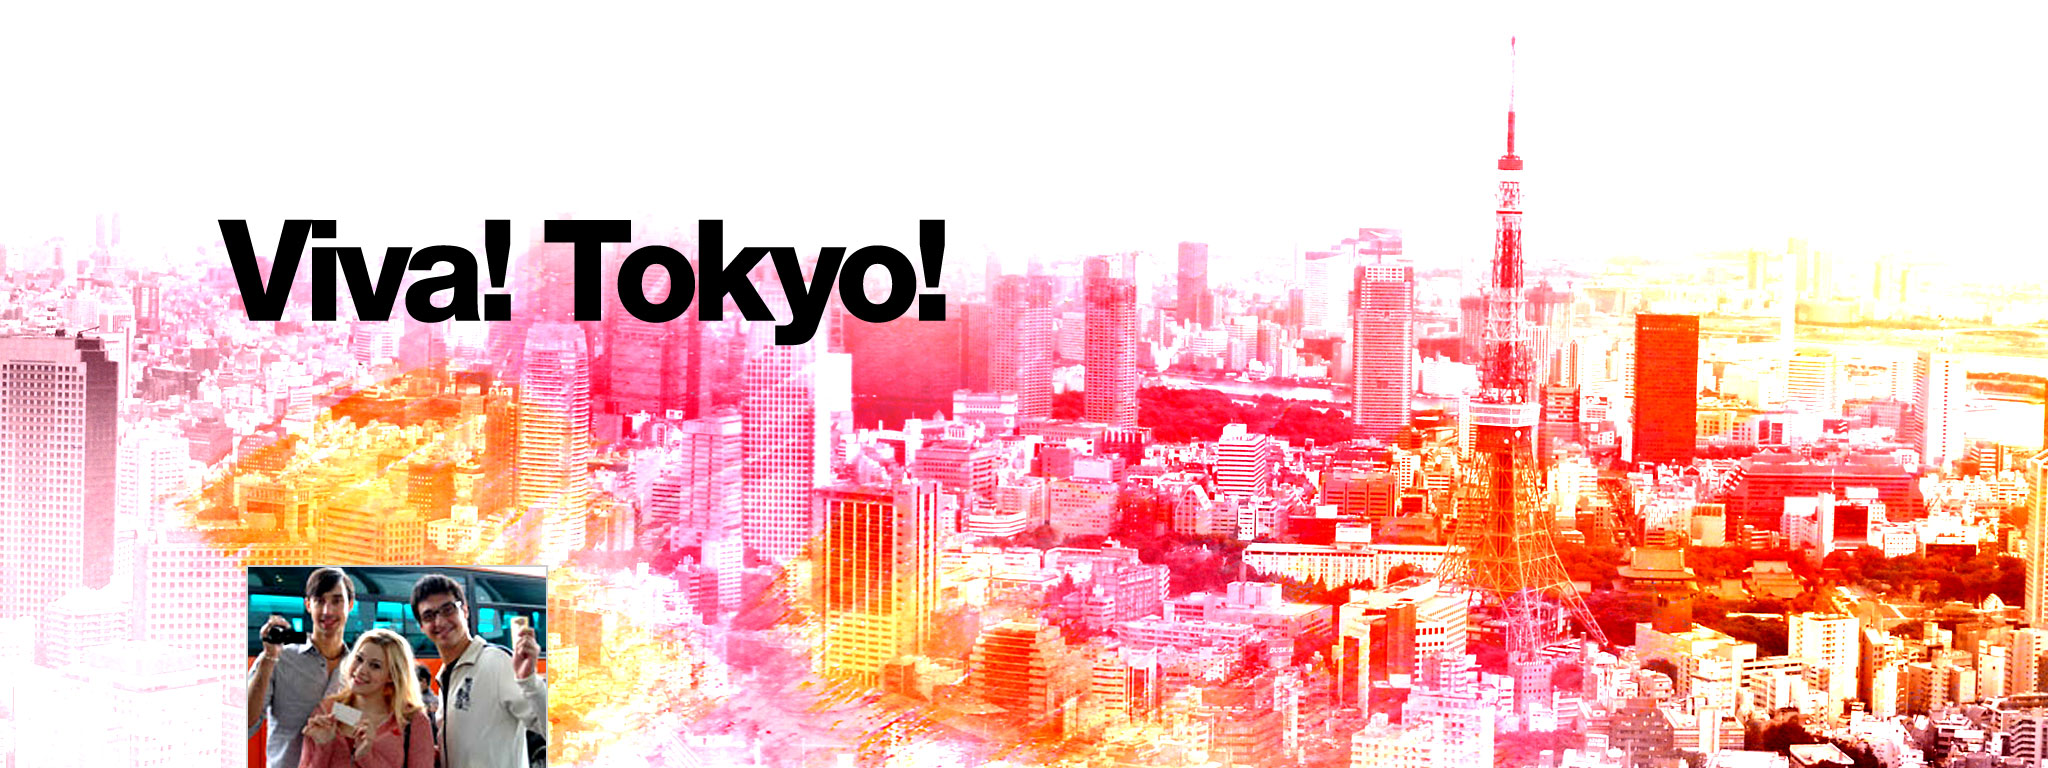 Title Art for Viva! Tokyo!